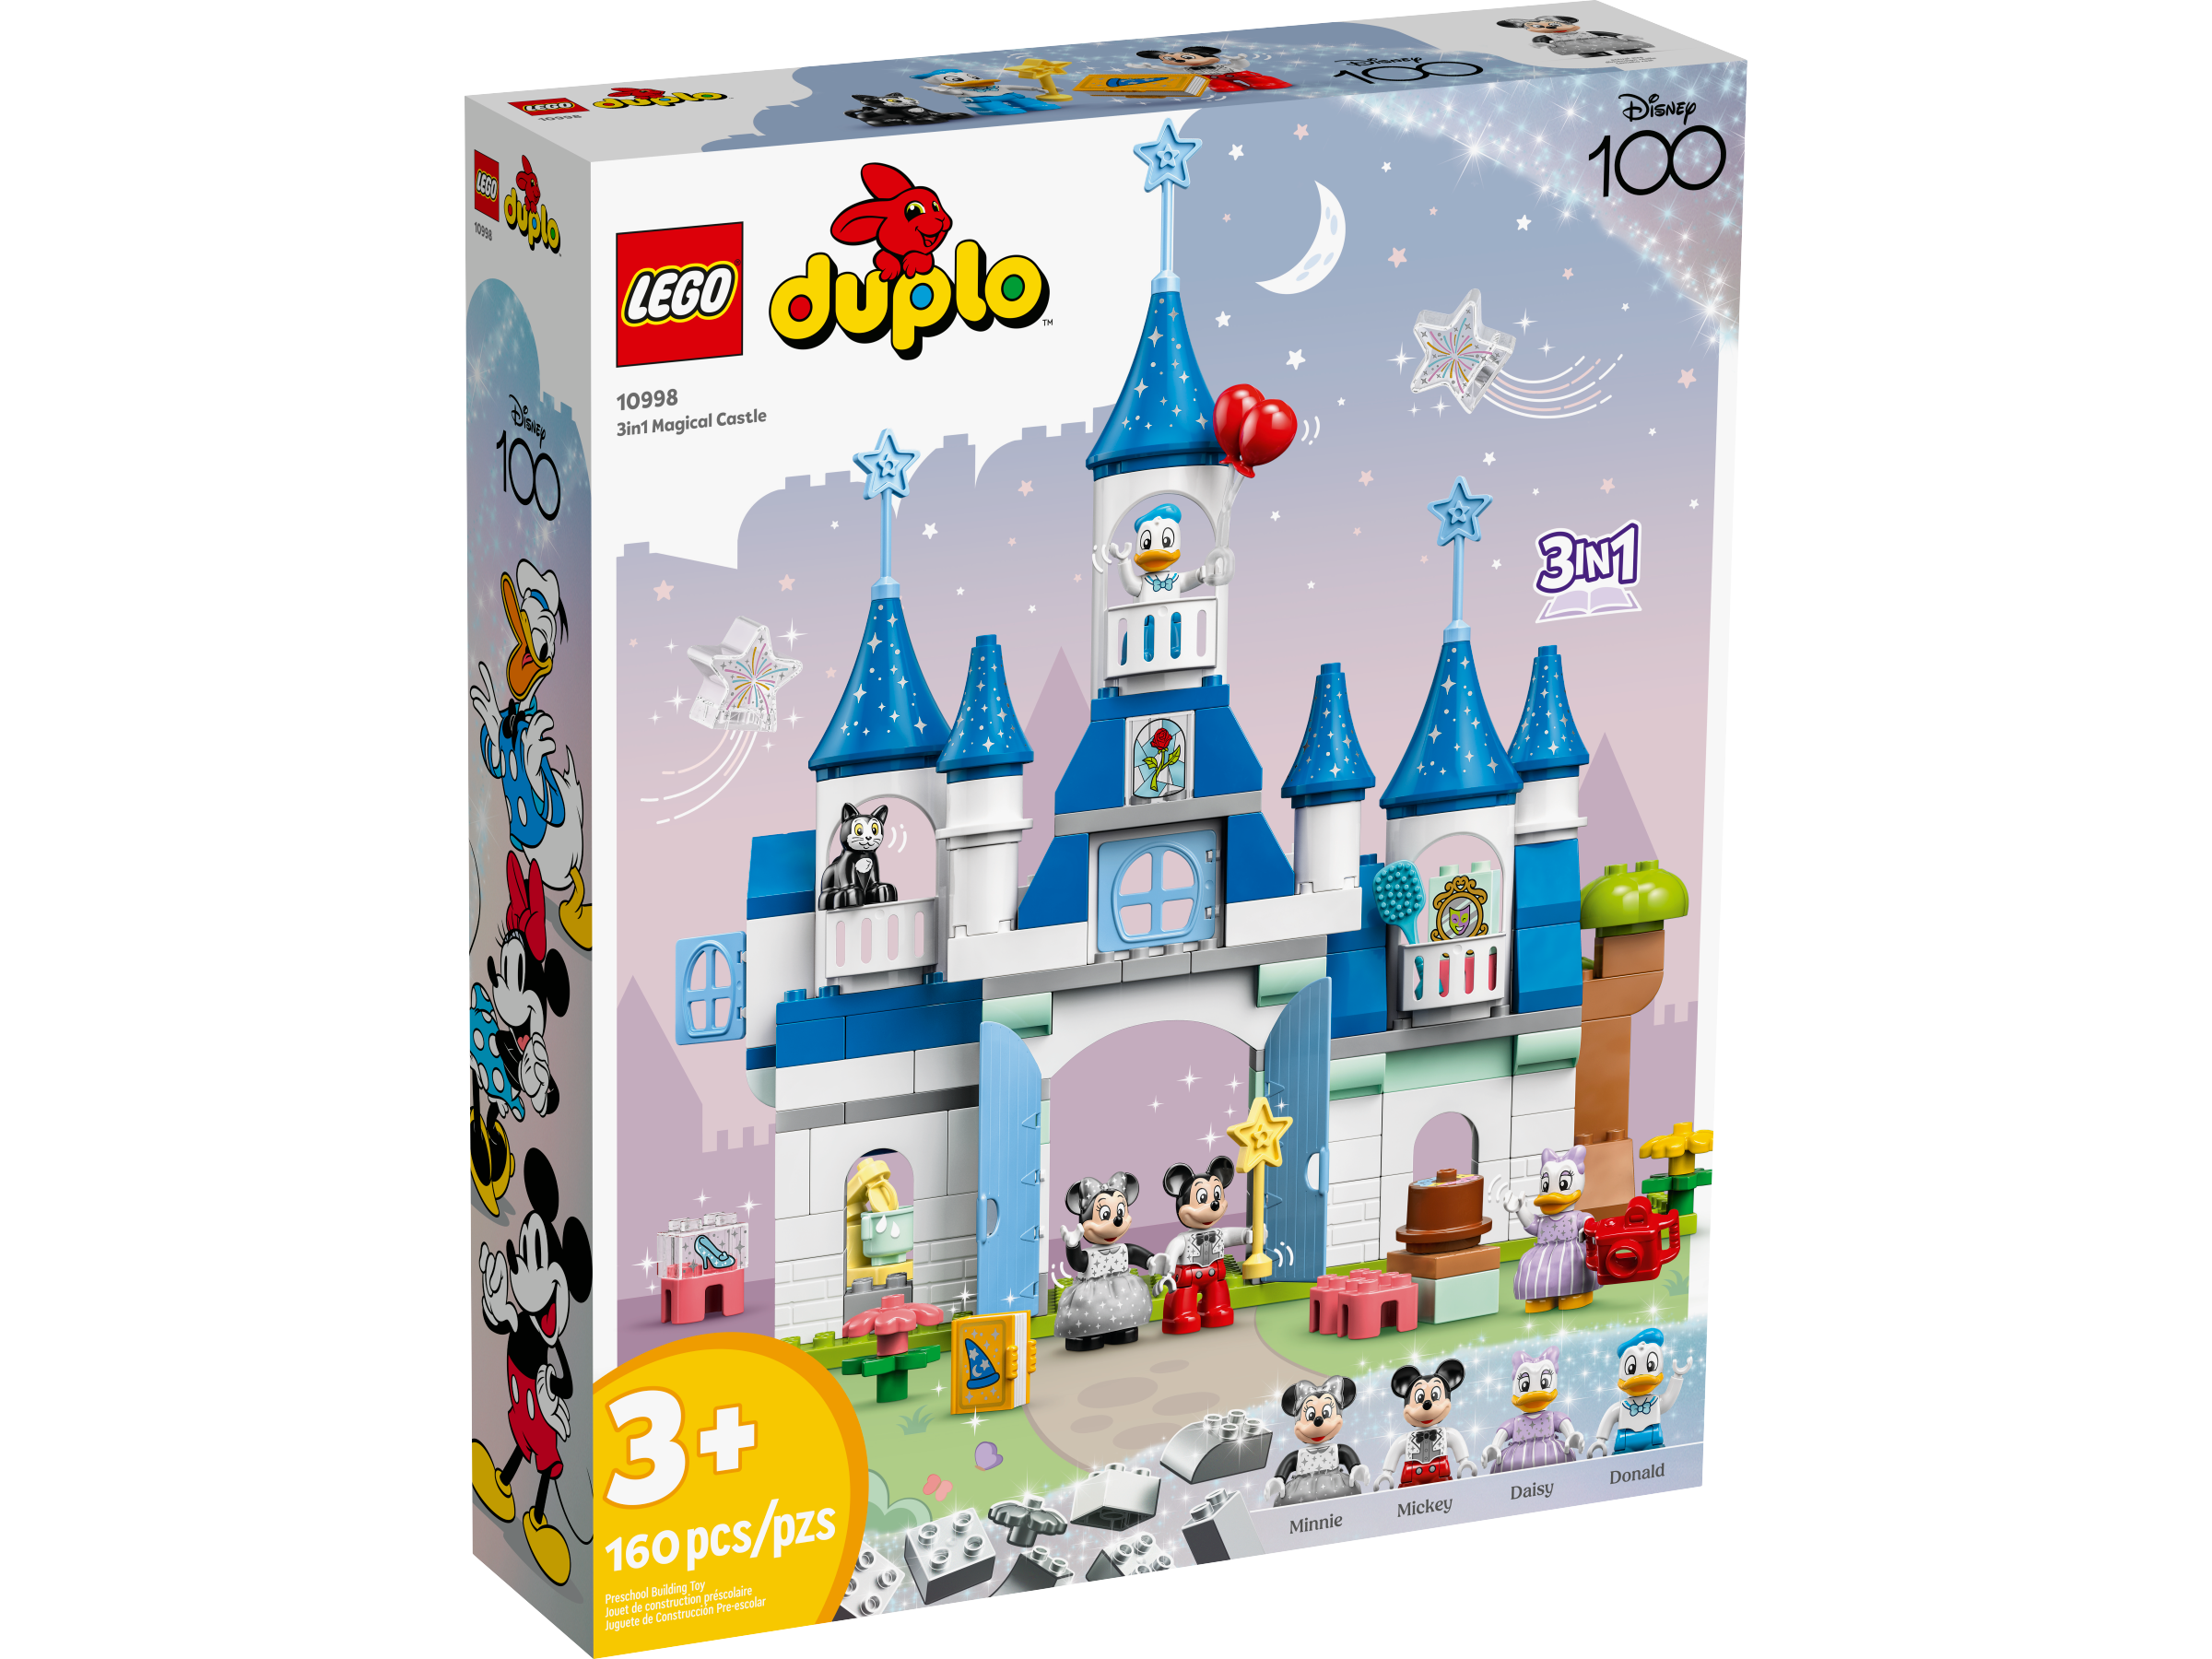 LEGO Duplo Disney 3-in-1-Zauberschloss (10998) - im GOLDSTIEN.SHOP verfügbar mit Gratisversand ab Schweizer Lager! (5702017417431)